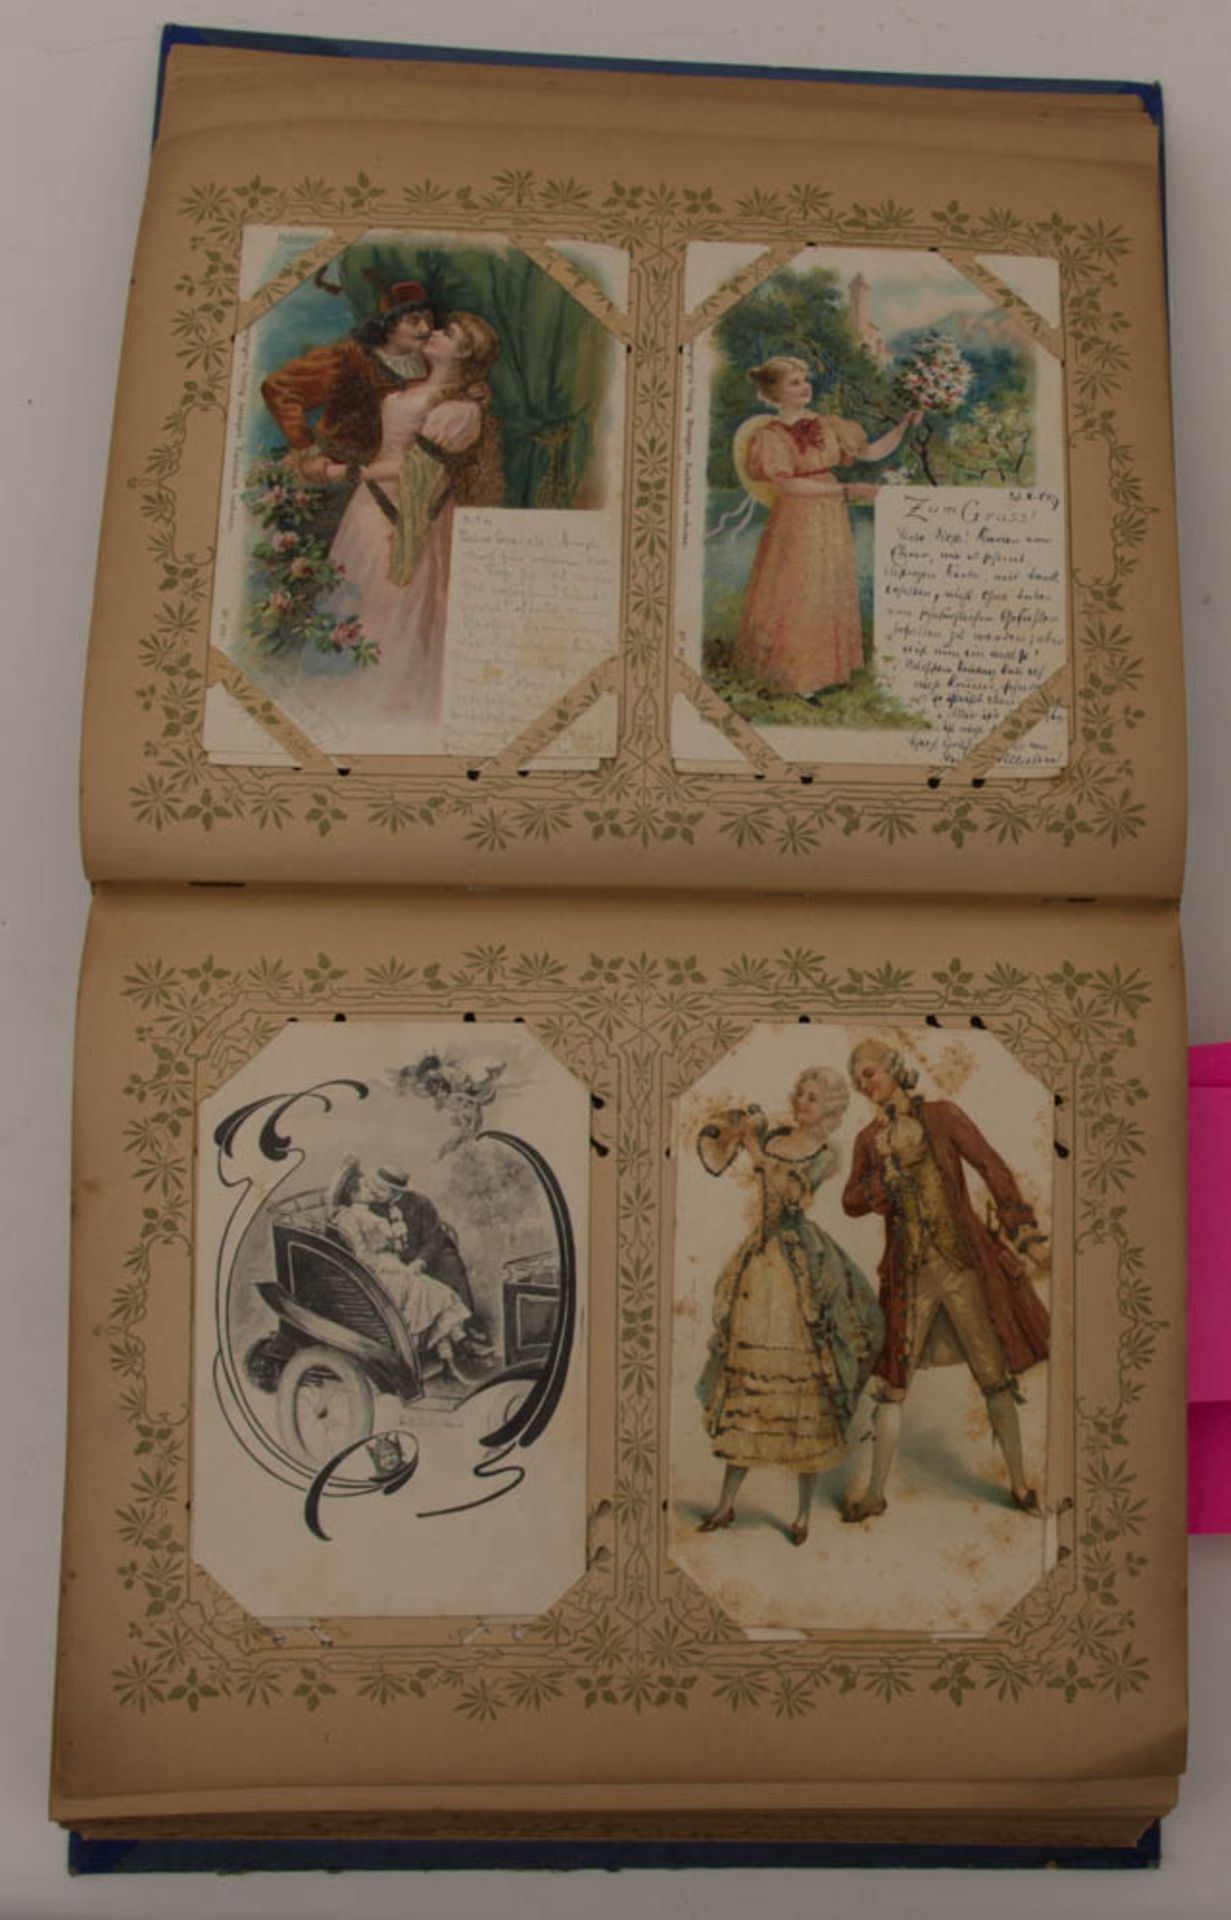 Historische Ansichts- und Autogrammkartensammlung, Deutschland, um 1910. - Bild 2 aus 6